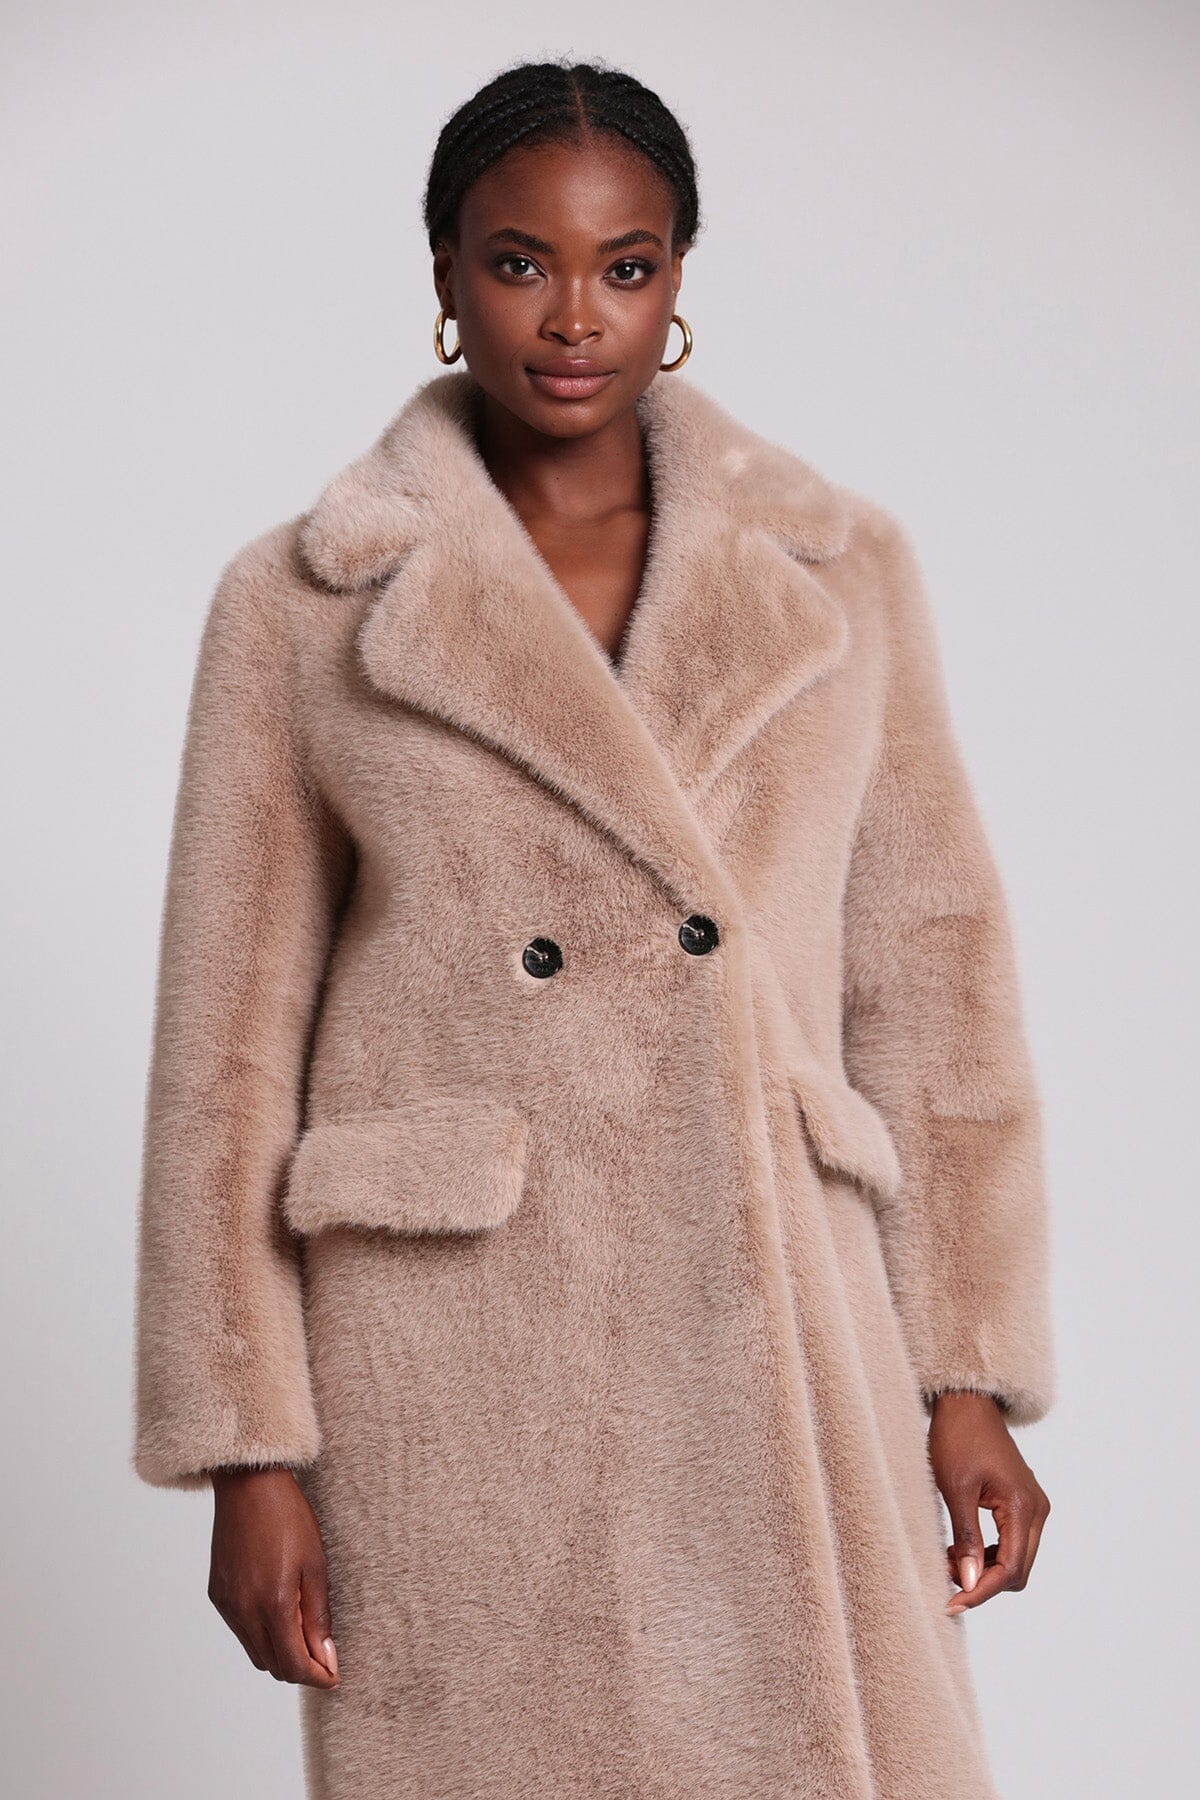 Beige double breasted faux mink fur coat jacket - women's figure flattering coats jackets outerwear Fall 2023 fashion trends